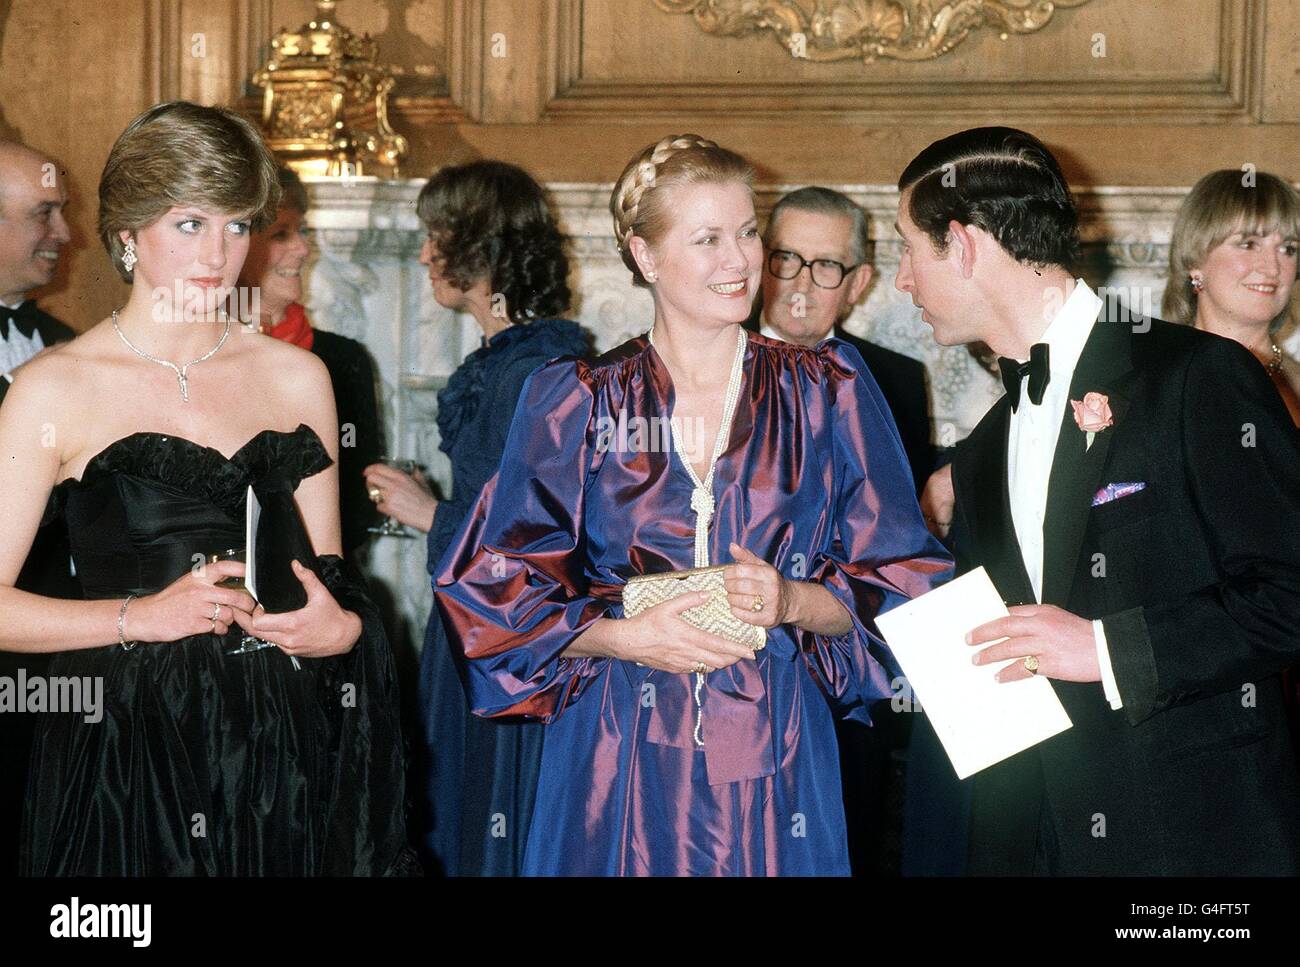 14/09/1982 - CE JOUR EN 1982 - la princesse Grace de Monaco, l'ancienne actrice américaine Grace Kelly, a été tuée dans un accident de voiture. PA NEWS PHOTO 9/3/81 LA PRINCESSE DE GALLES (L) AVEC LE PRINCE DE GALLES ET LA PRINCESSE GRACE DE MONACO AU GOLDSMITH'S HALL DE LONDRES EN TANT QU'INVITÉS À UN DIVERTISSEMENT À L'AIDE DE L'APPEL AU DÉVELOPPEMENT DE L'OPÉRA ROYAL. Banque D'Images